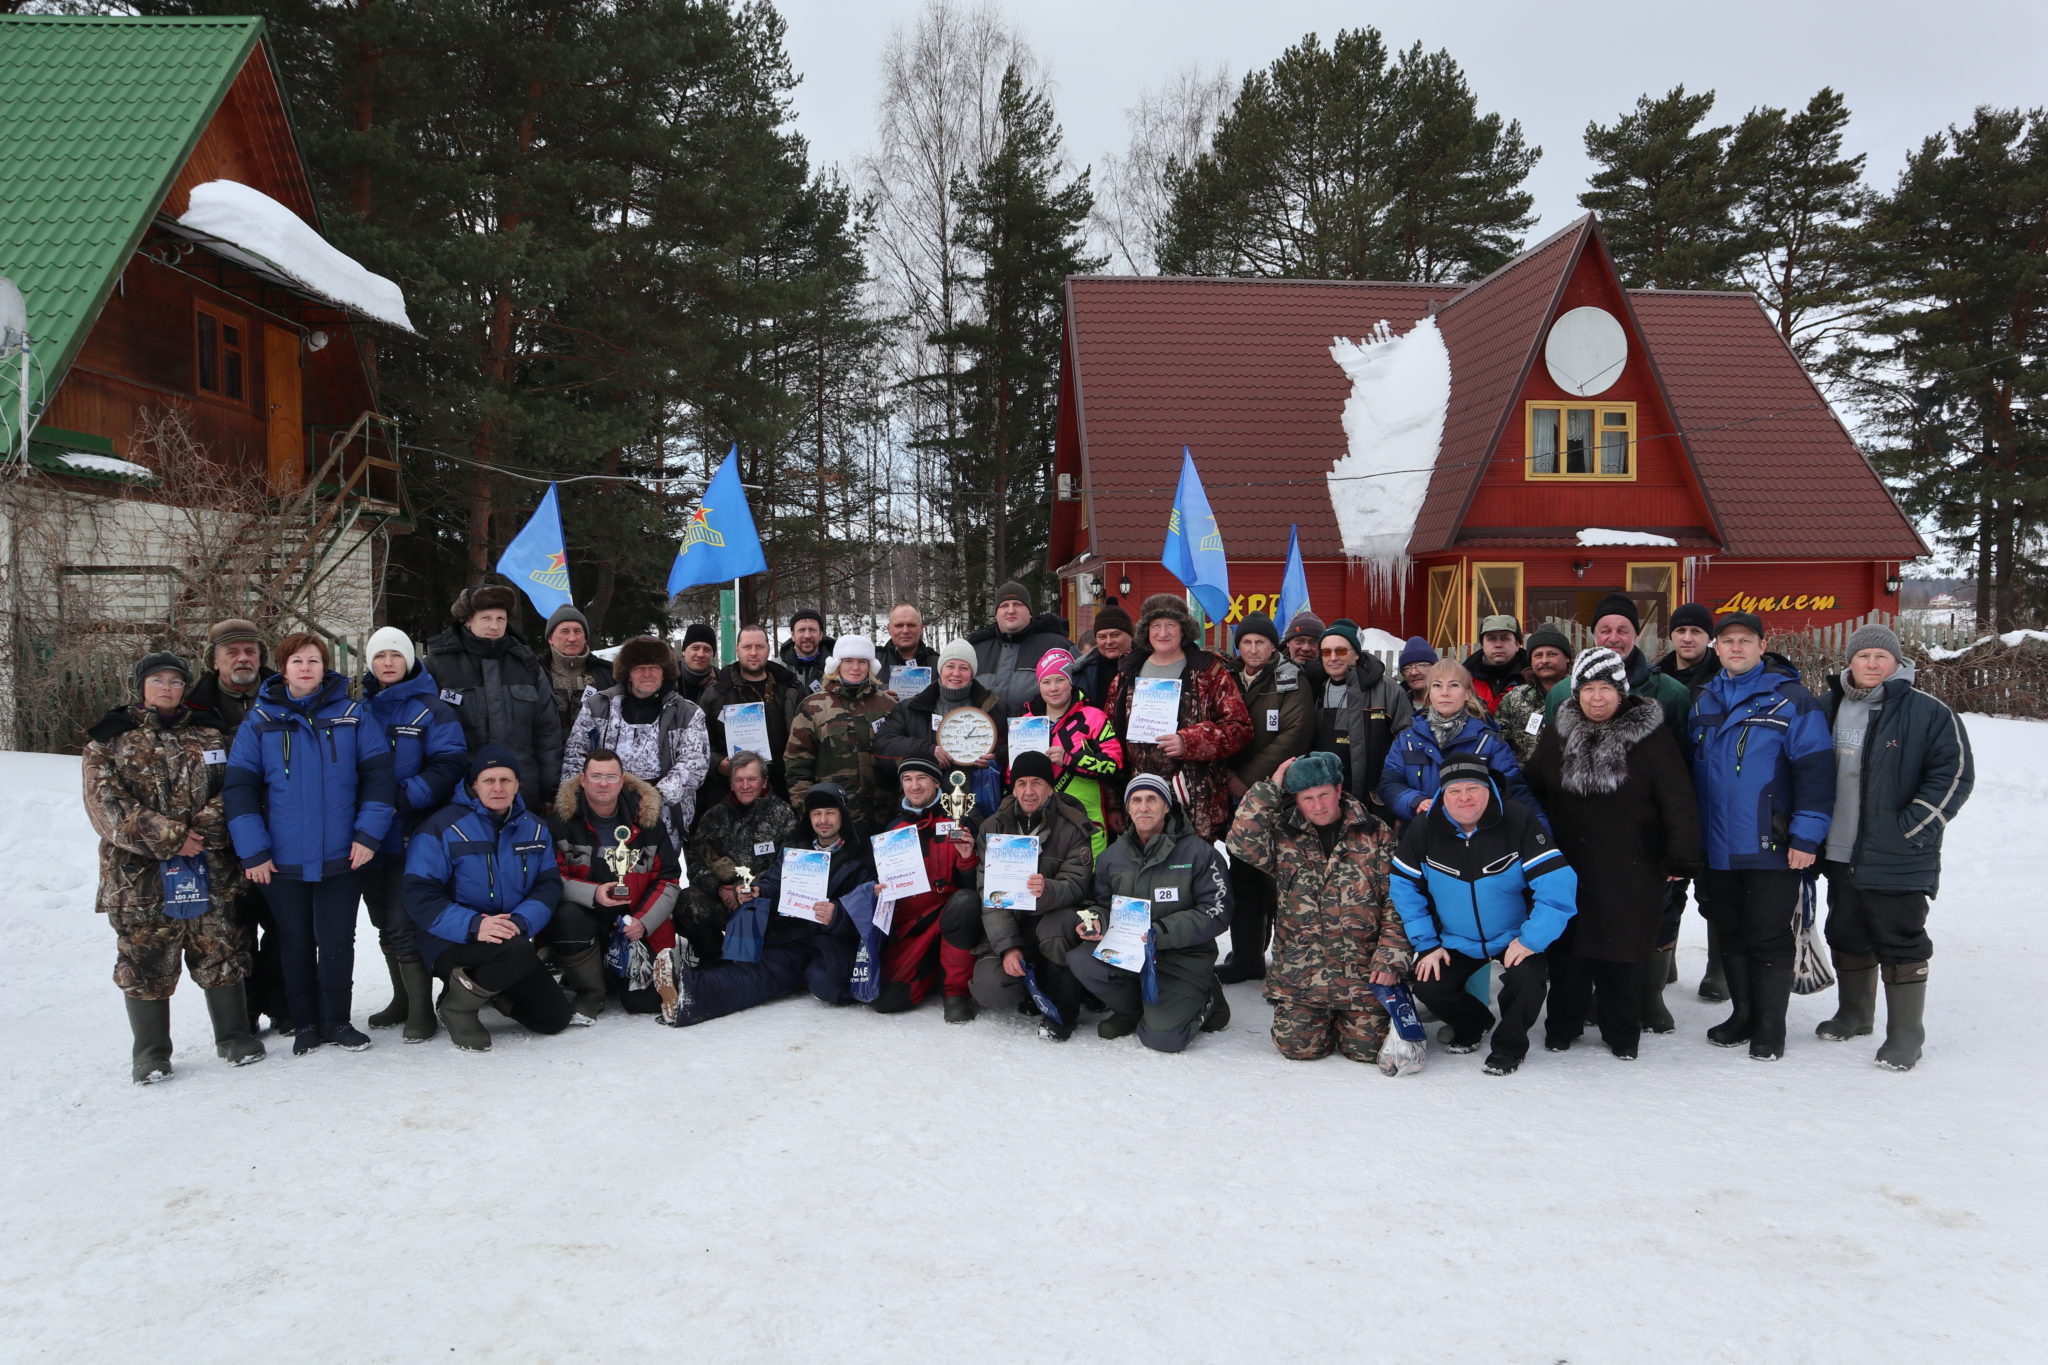 Профком ППОО «Сатурн» ПРОФАВИА провел первый профсоюзный чемпионат по зимней рыбалке